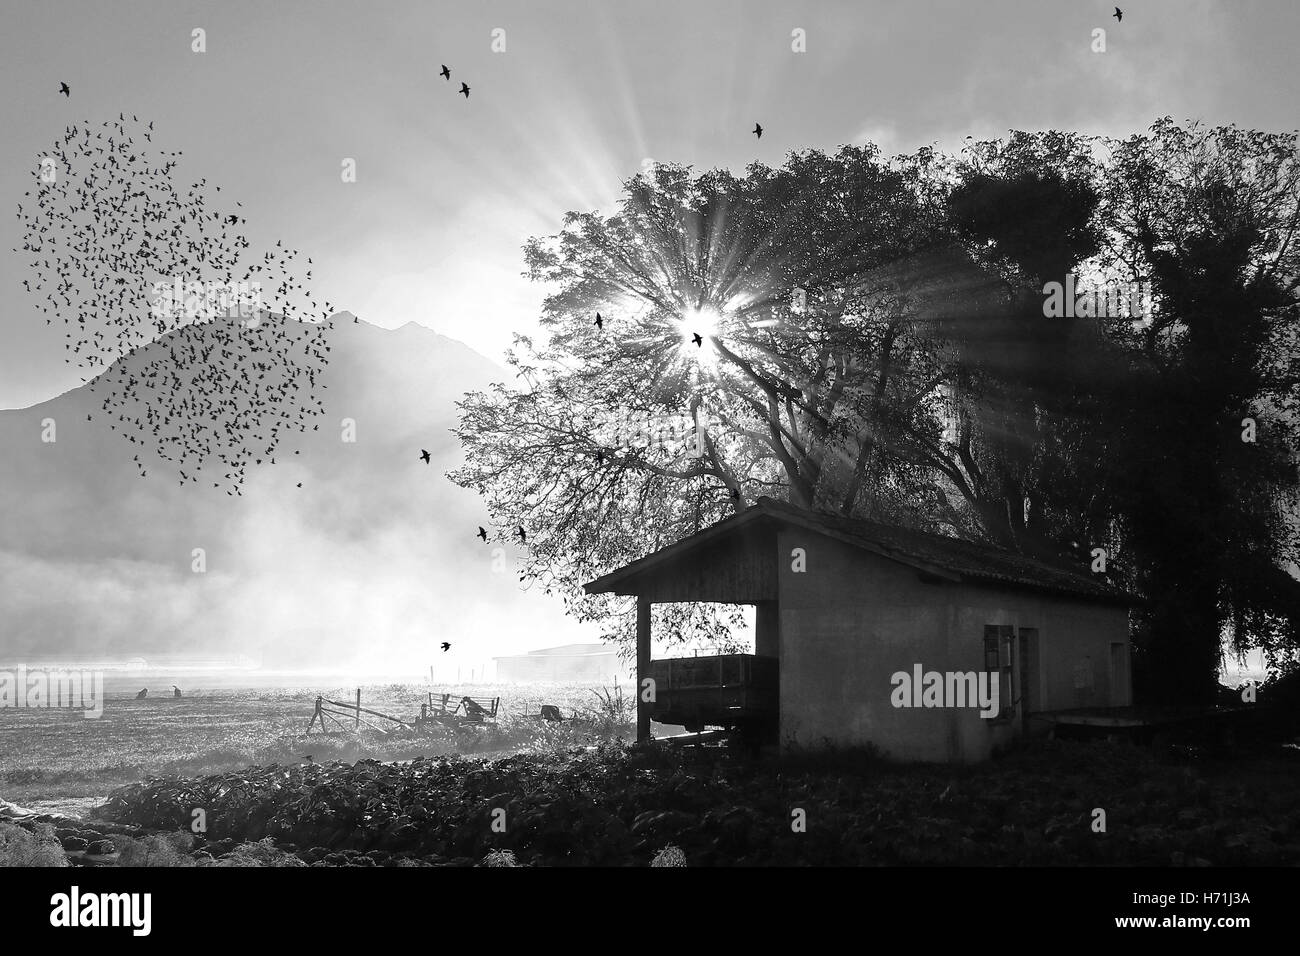 La migrazione di branchi di storni in autunno nel dissipare nebbia di mattina all'alba in bianco e nero Foto Stock